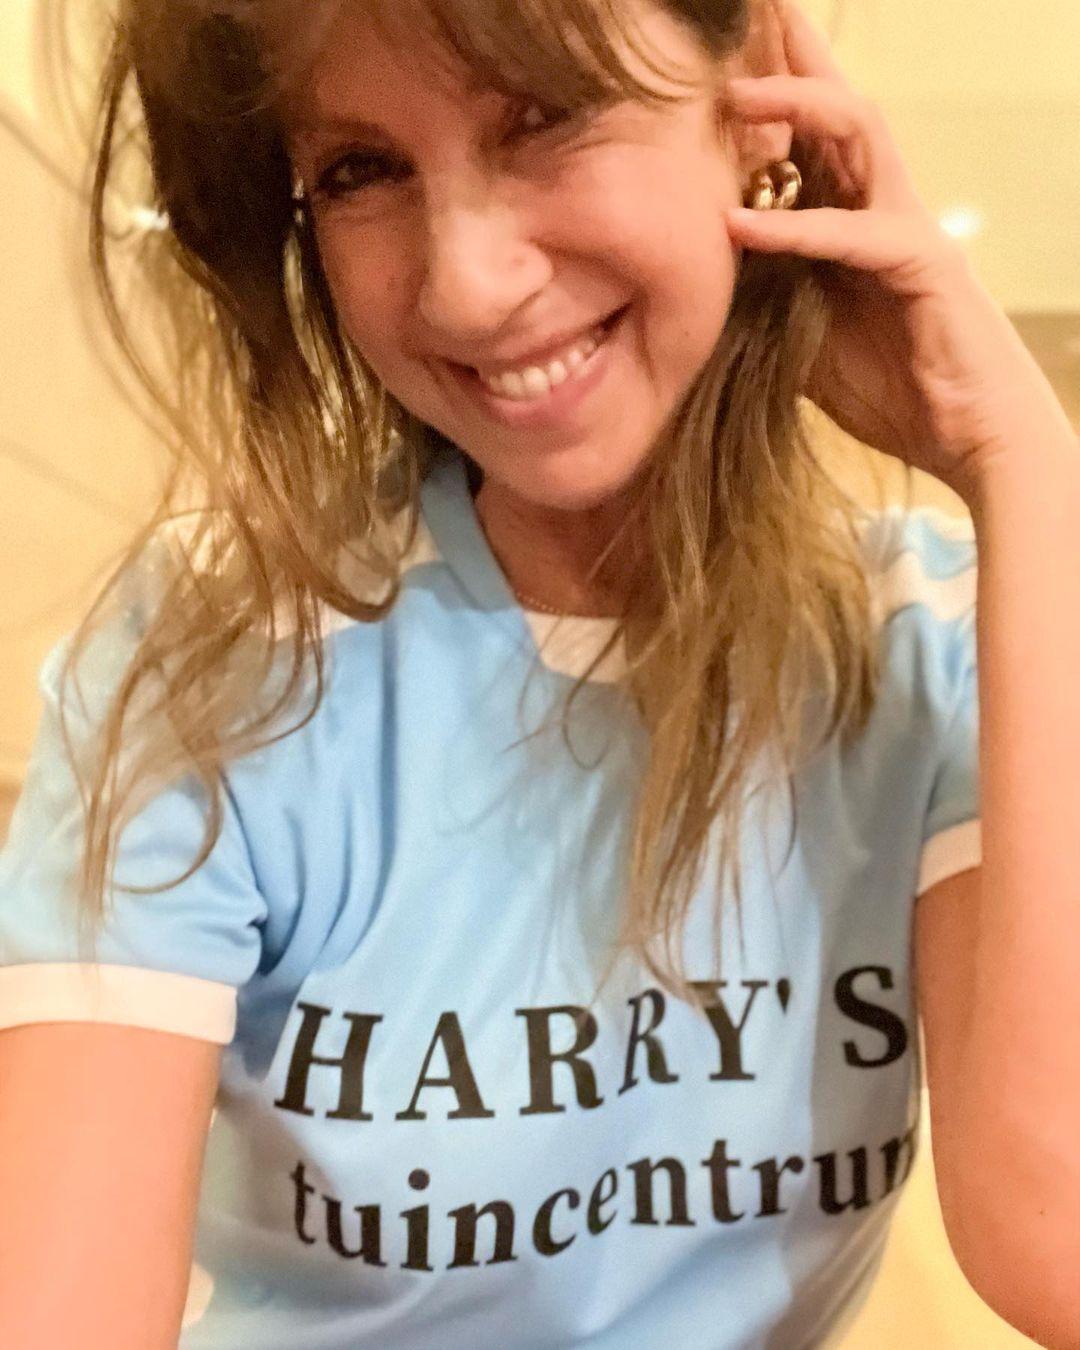 class="content__text"
 Yes!!!!! Eindelijk een shirt bemachtigd van Harry’s tuincentrum… #itsawrap #allstars #roos #metofzondermark #thatsthequestion #comedy met de liefste regisseur Jean vd Velde 💕💋 
 